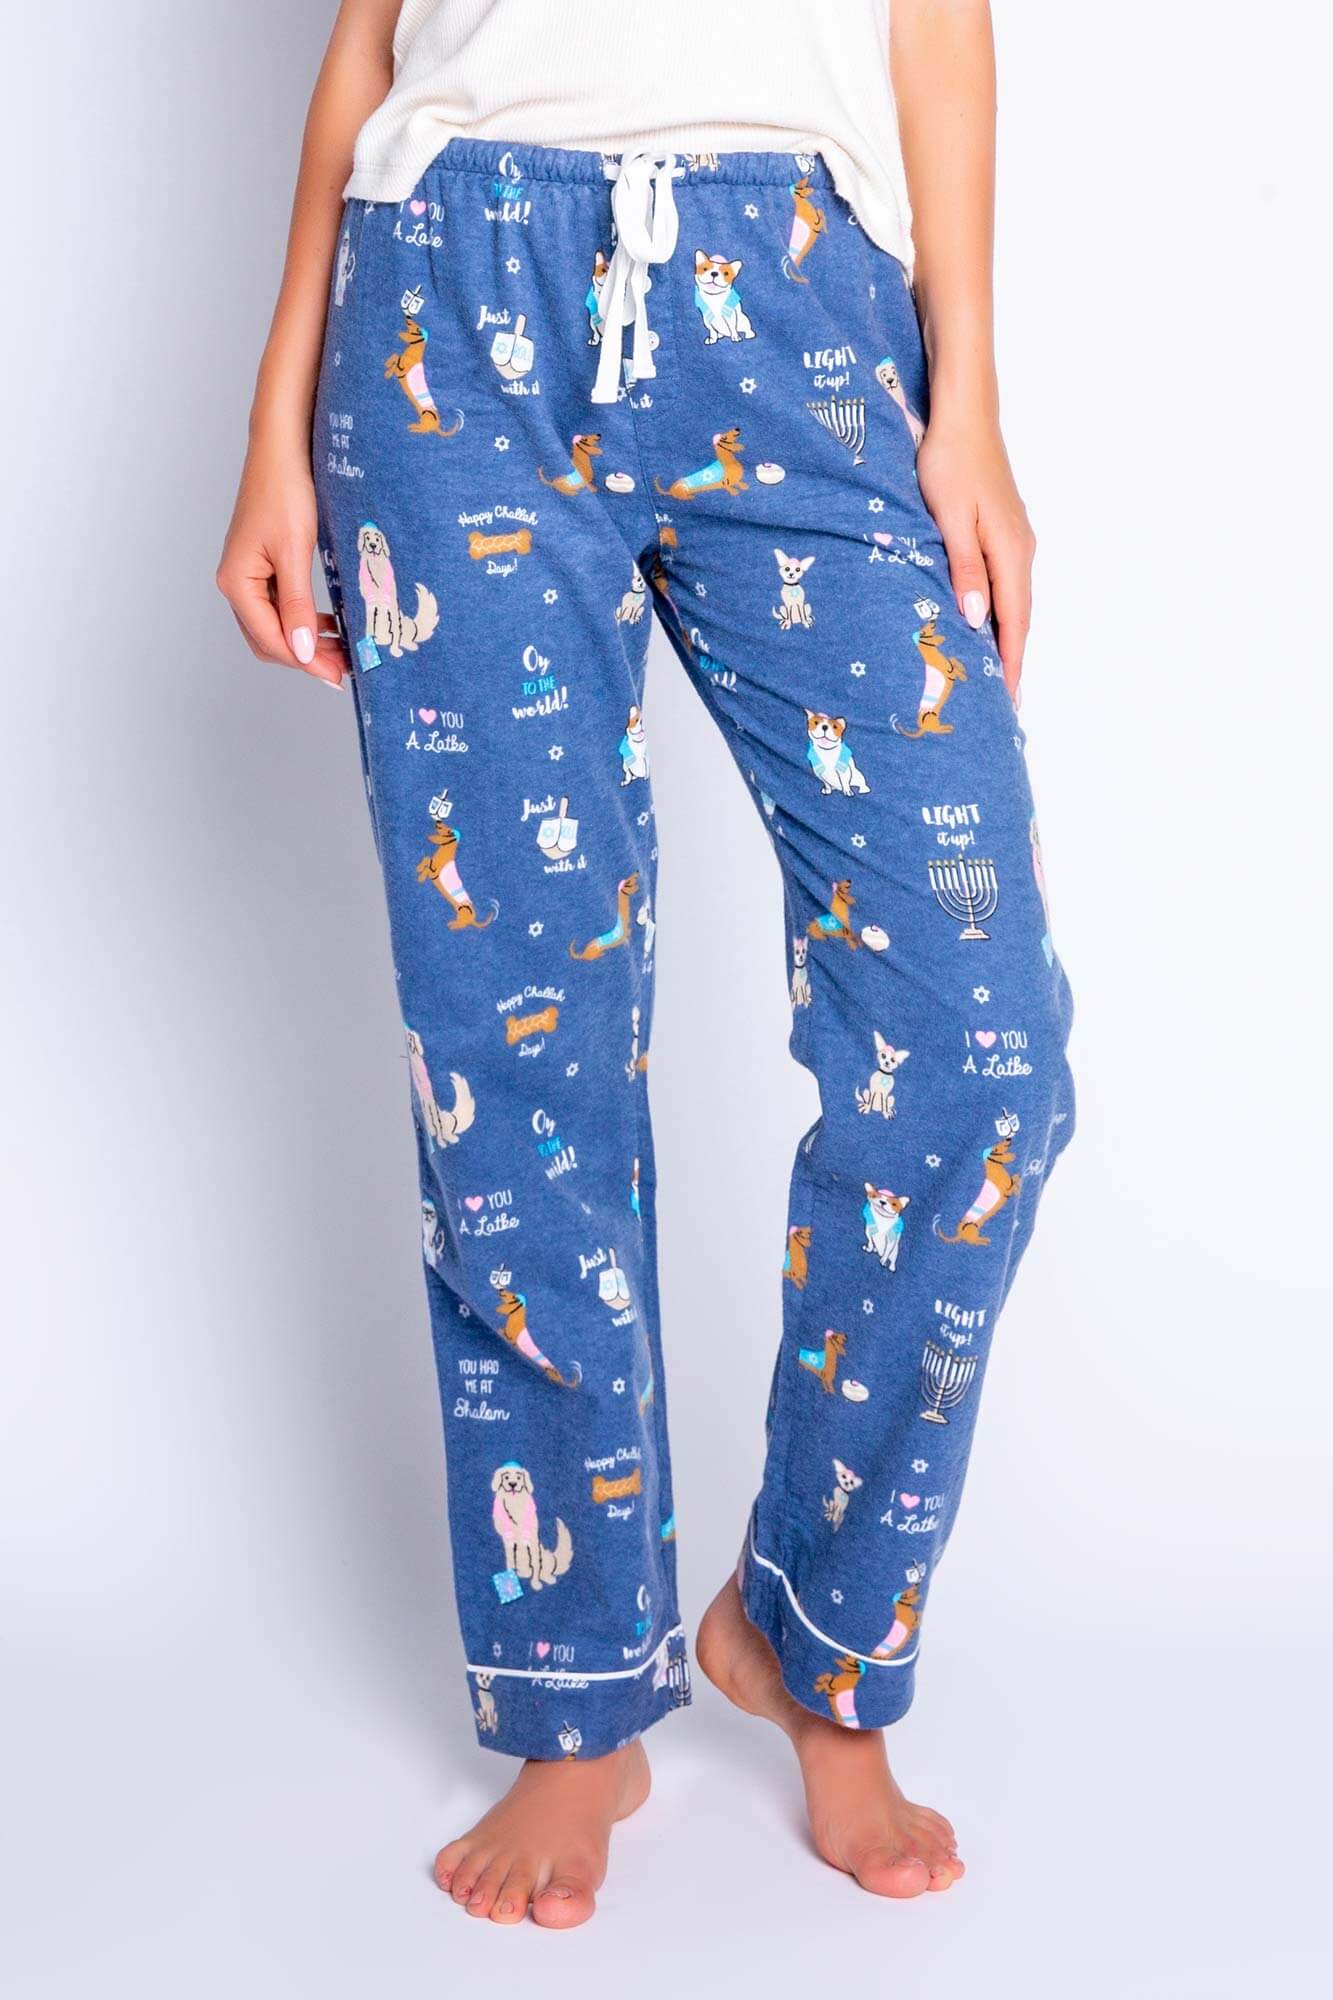 PJ Salvage Pajamas Oy to the World Hanukkah Pajama Pants by P.J. Salvage - Women